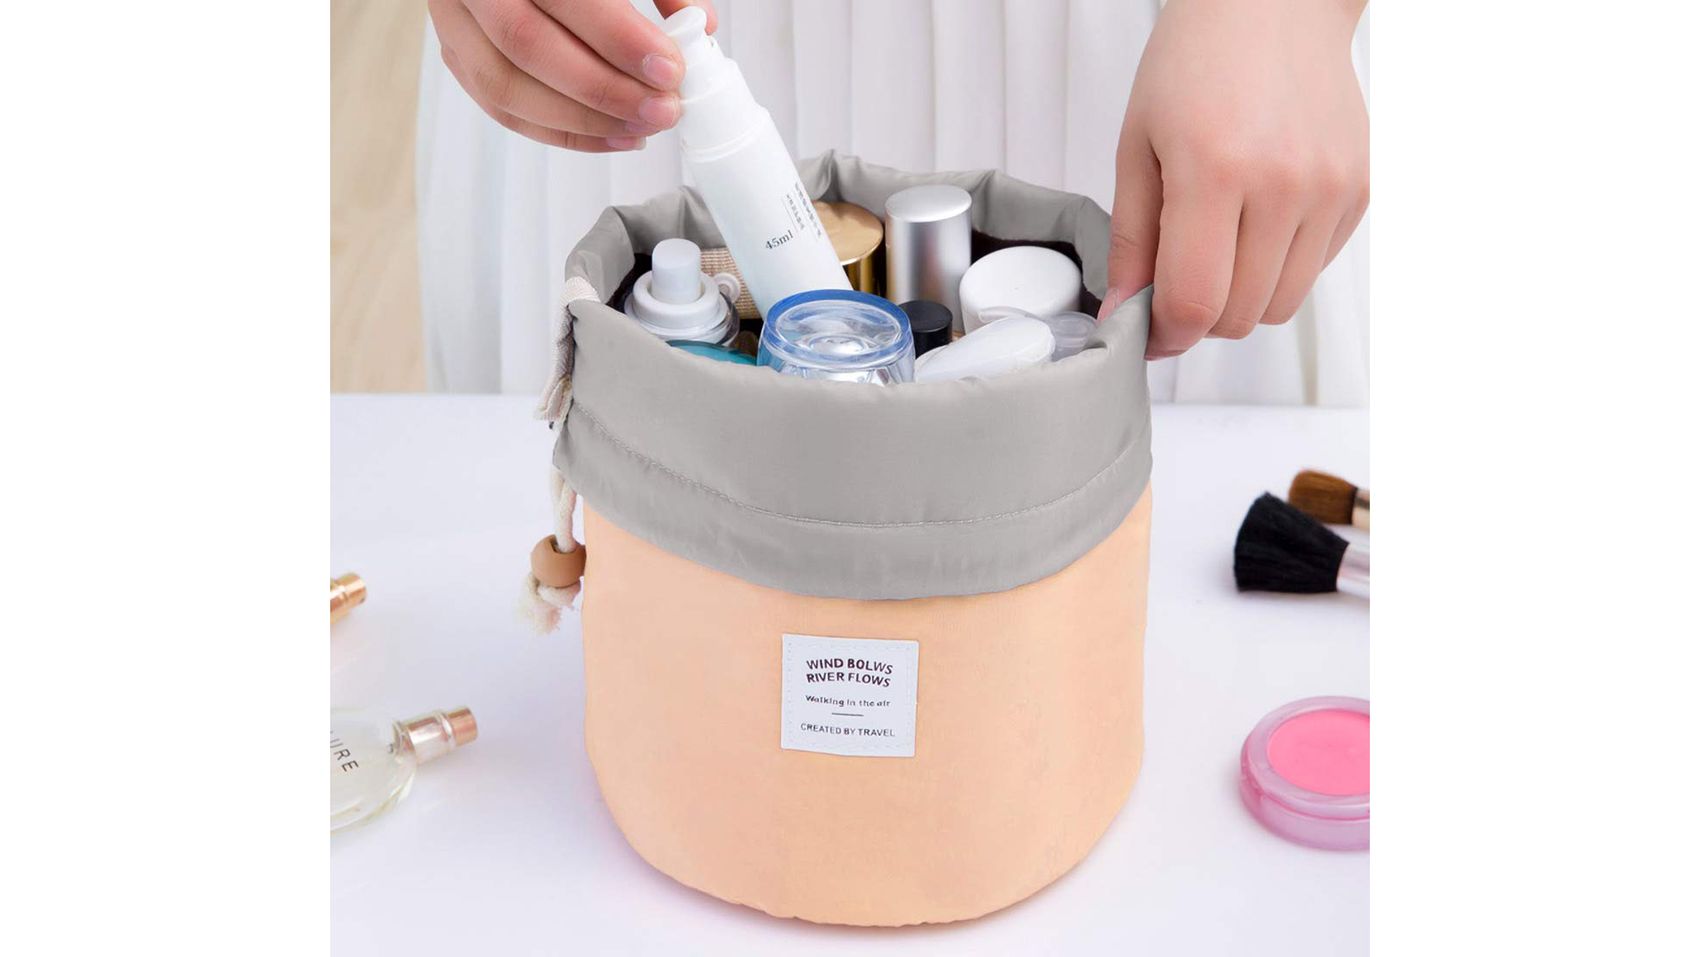 Makeup Bag Dual Cosmetic Bag Cosmetic Case Brush Storage Organizer